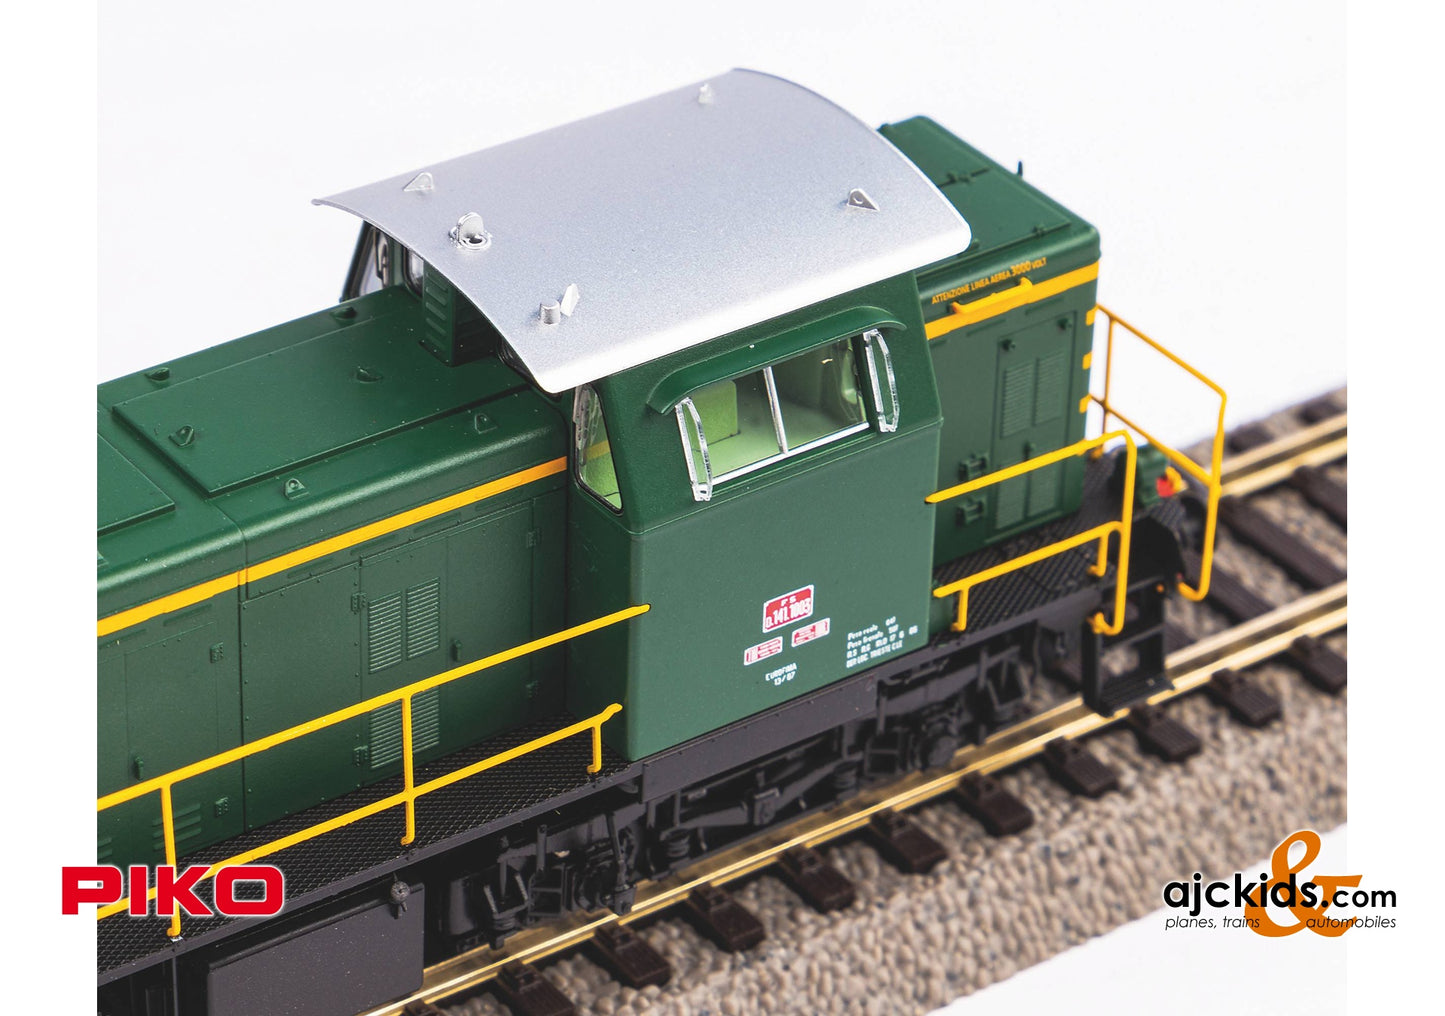 Piko 52452 - D.141.1005 Diesel Locomotive FS IV Sound